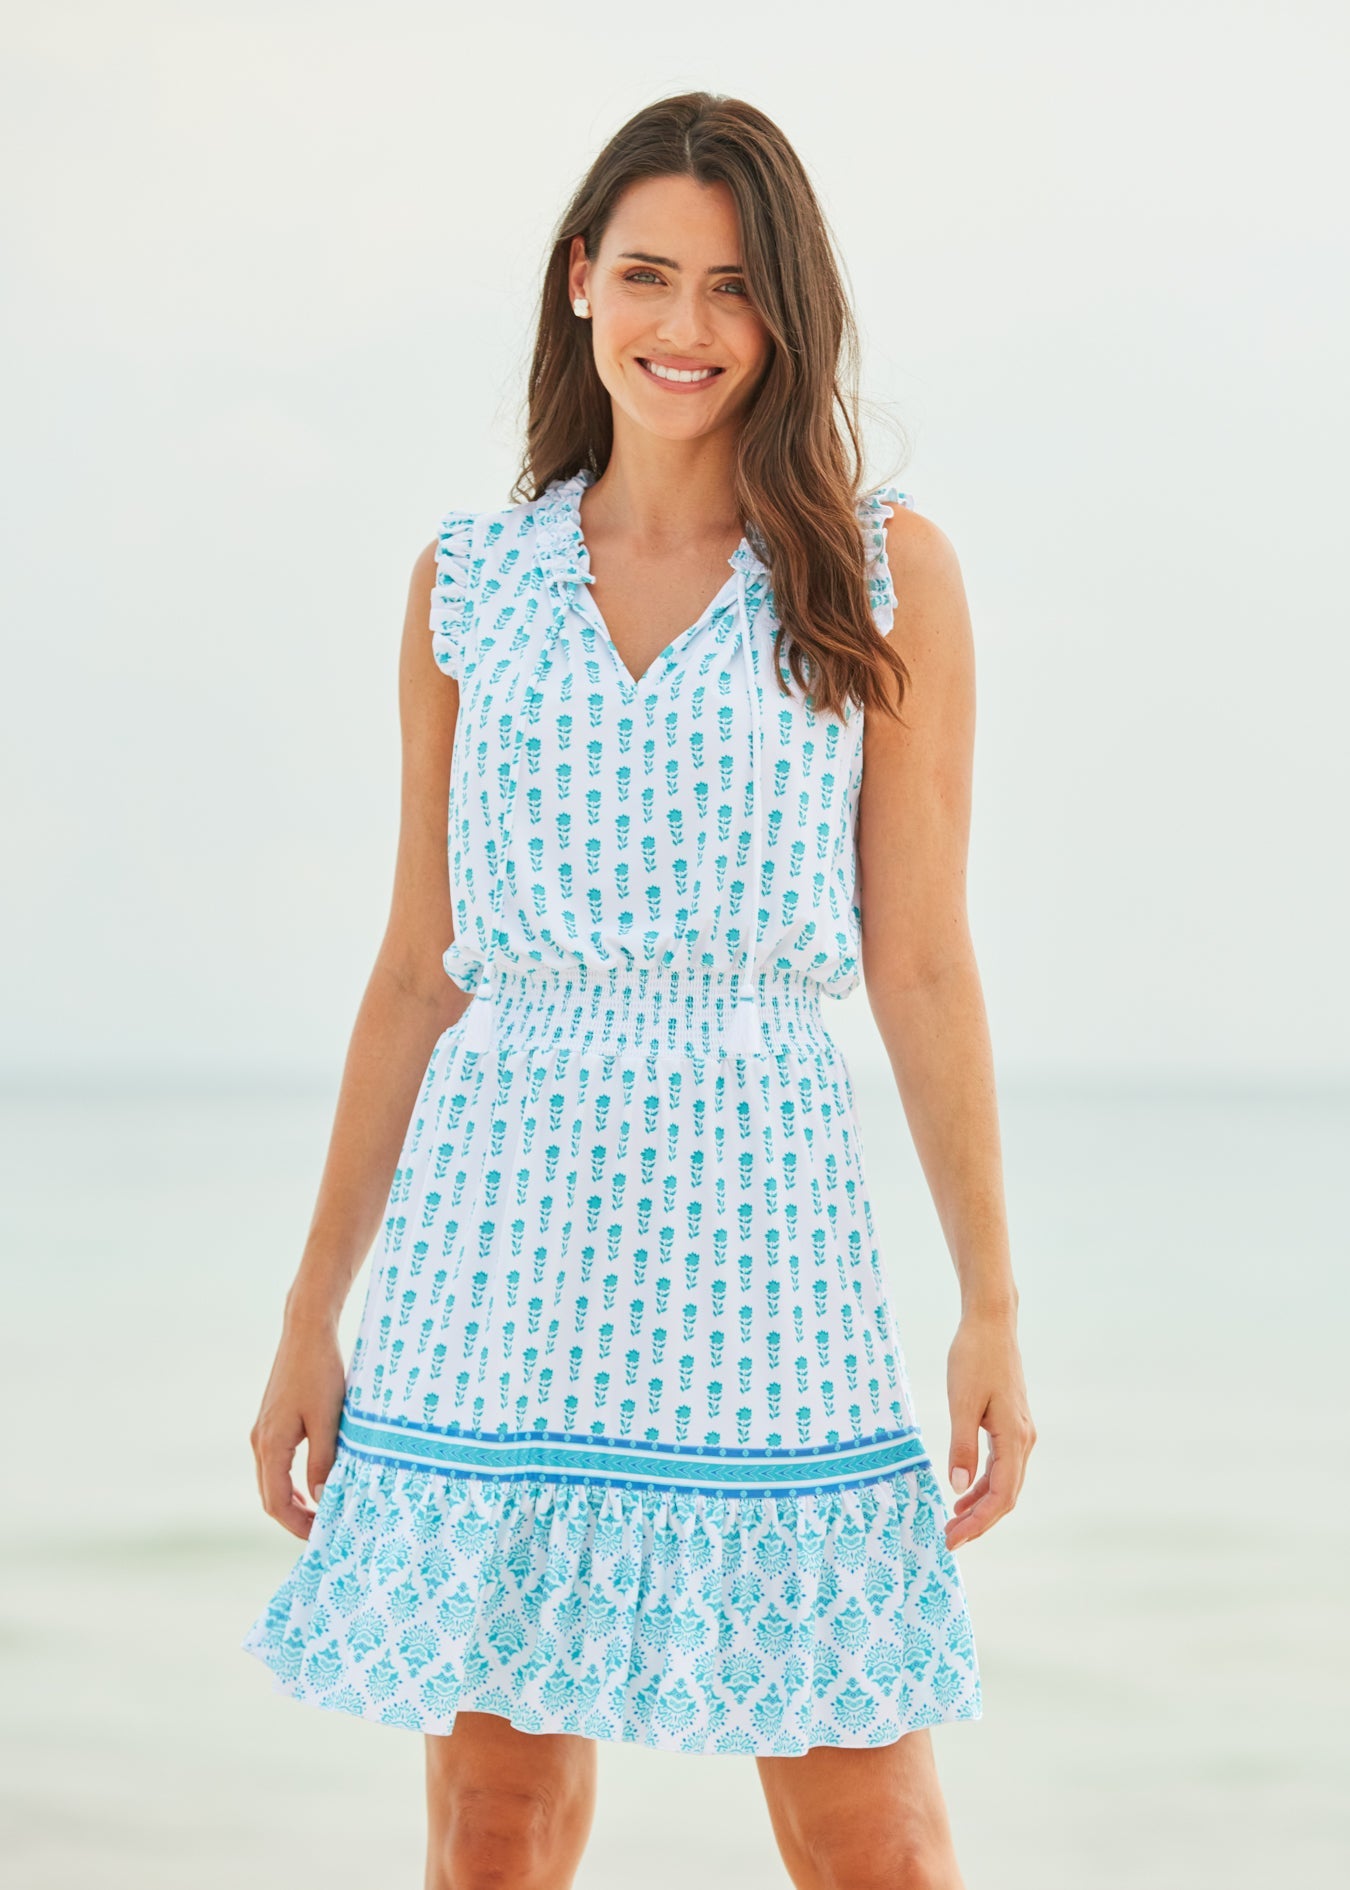 Brunette woman wearing Amalfi Coast Sleeveless Ruffle Dress on beach